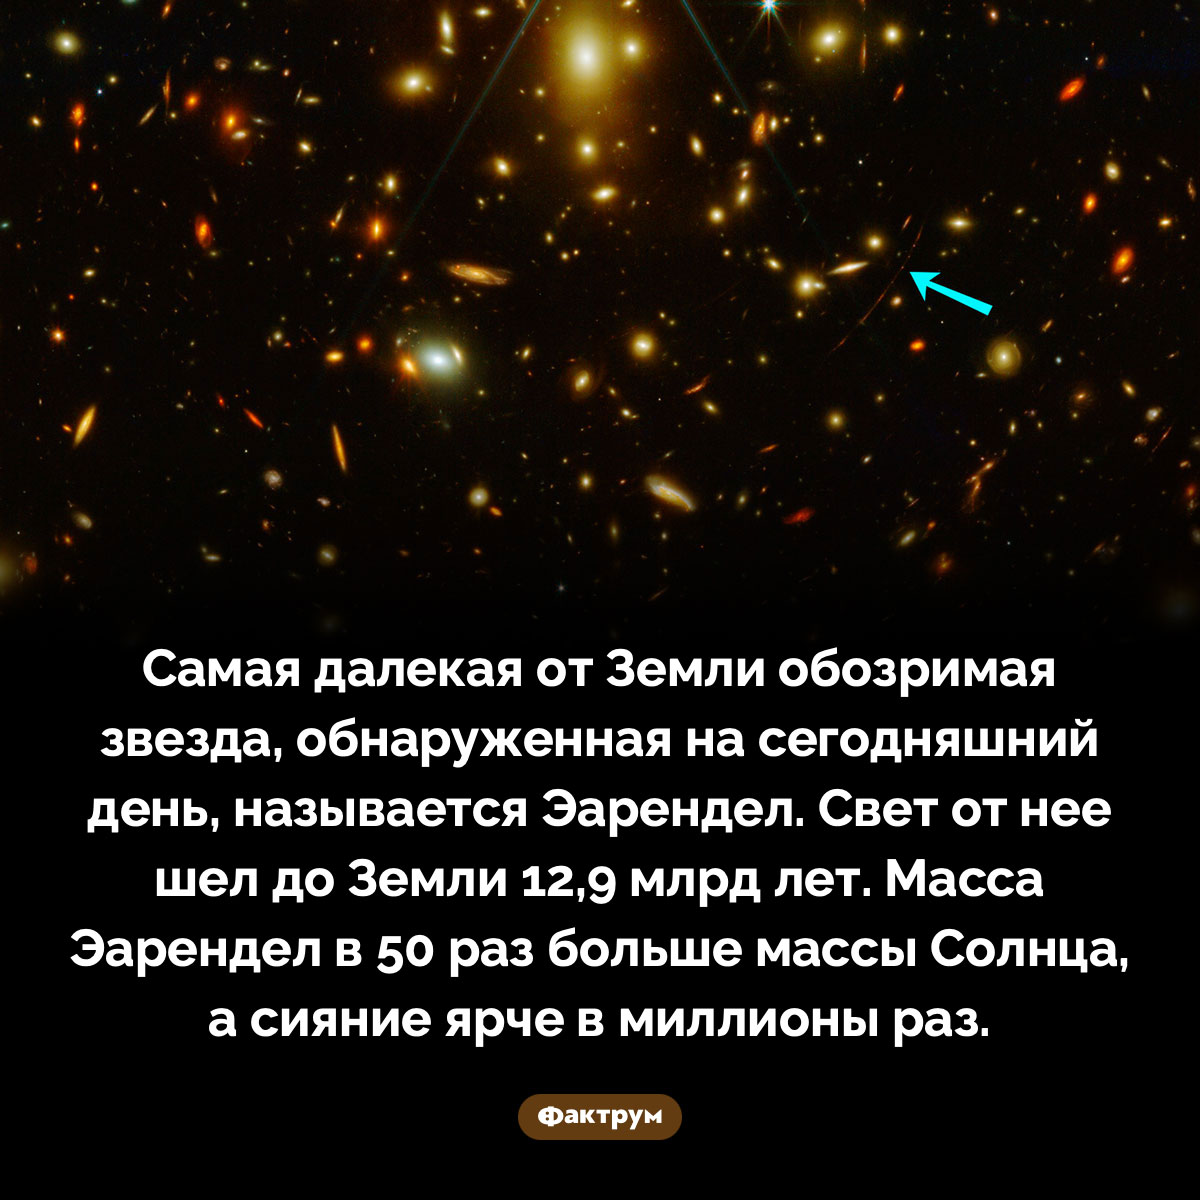 Самая далекая звезда. Самая далекая от Земли обозримая звезда, обнаруженная на сегодняшний день, называется Эарендел. Свет от нее шел до Земли 12,9 млрд лет. Масса Эарендел в 50 раз больше массы Солнца, а сияние ярче в миллионы раз.